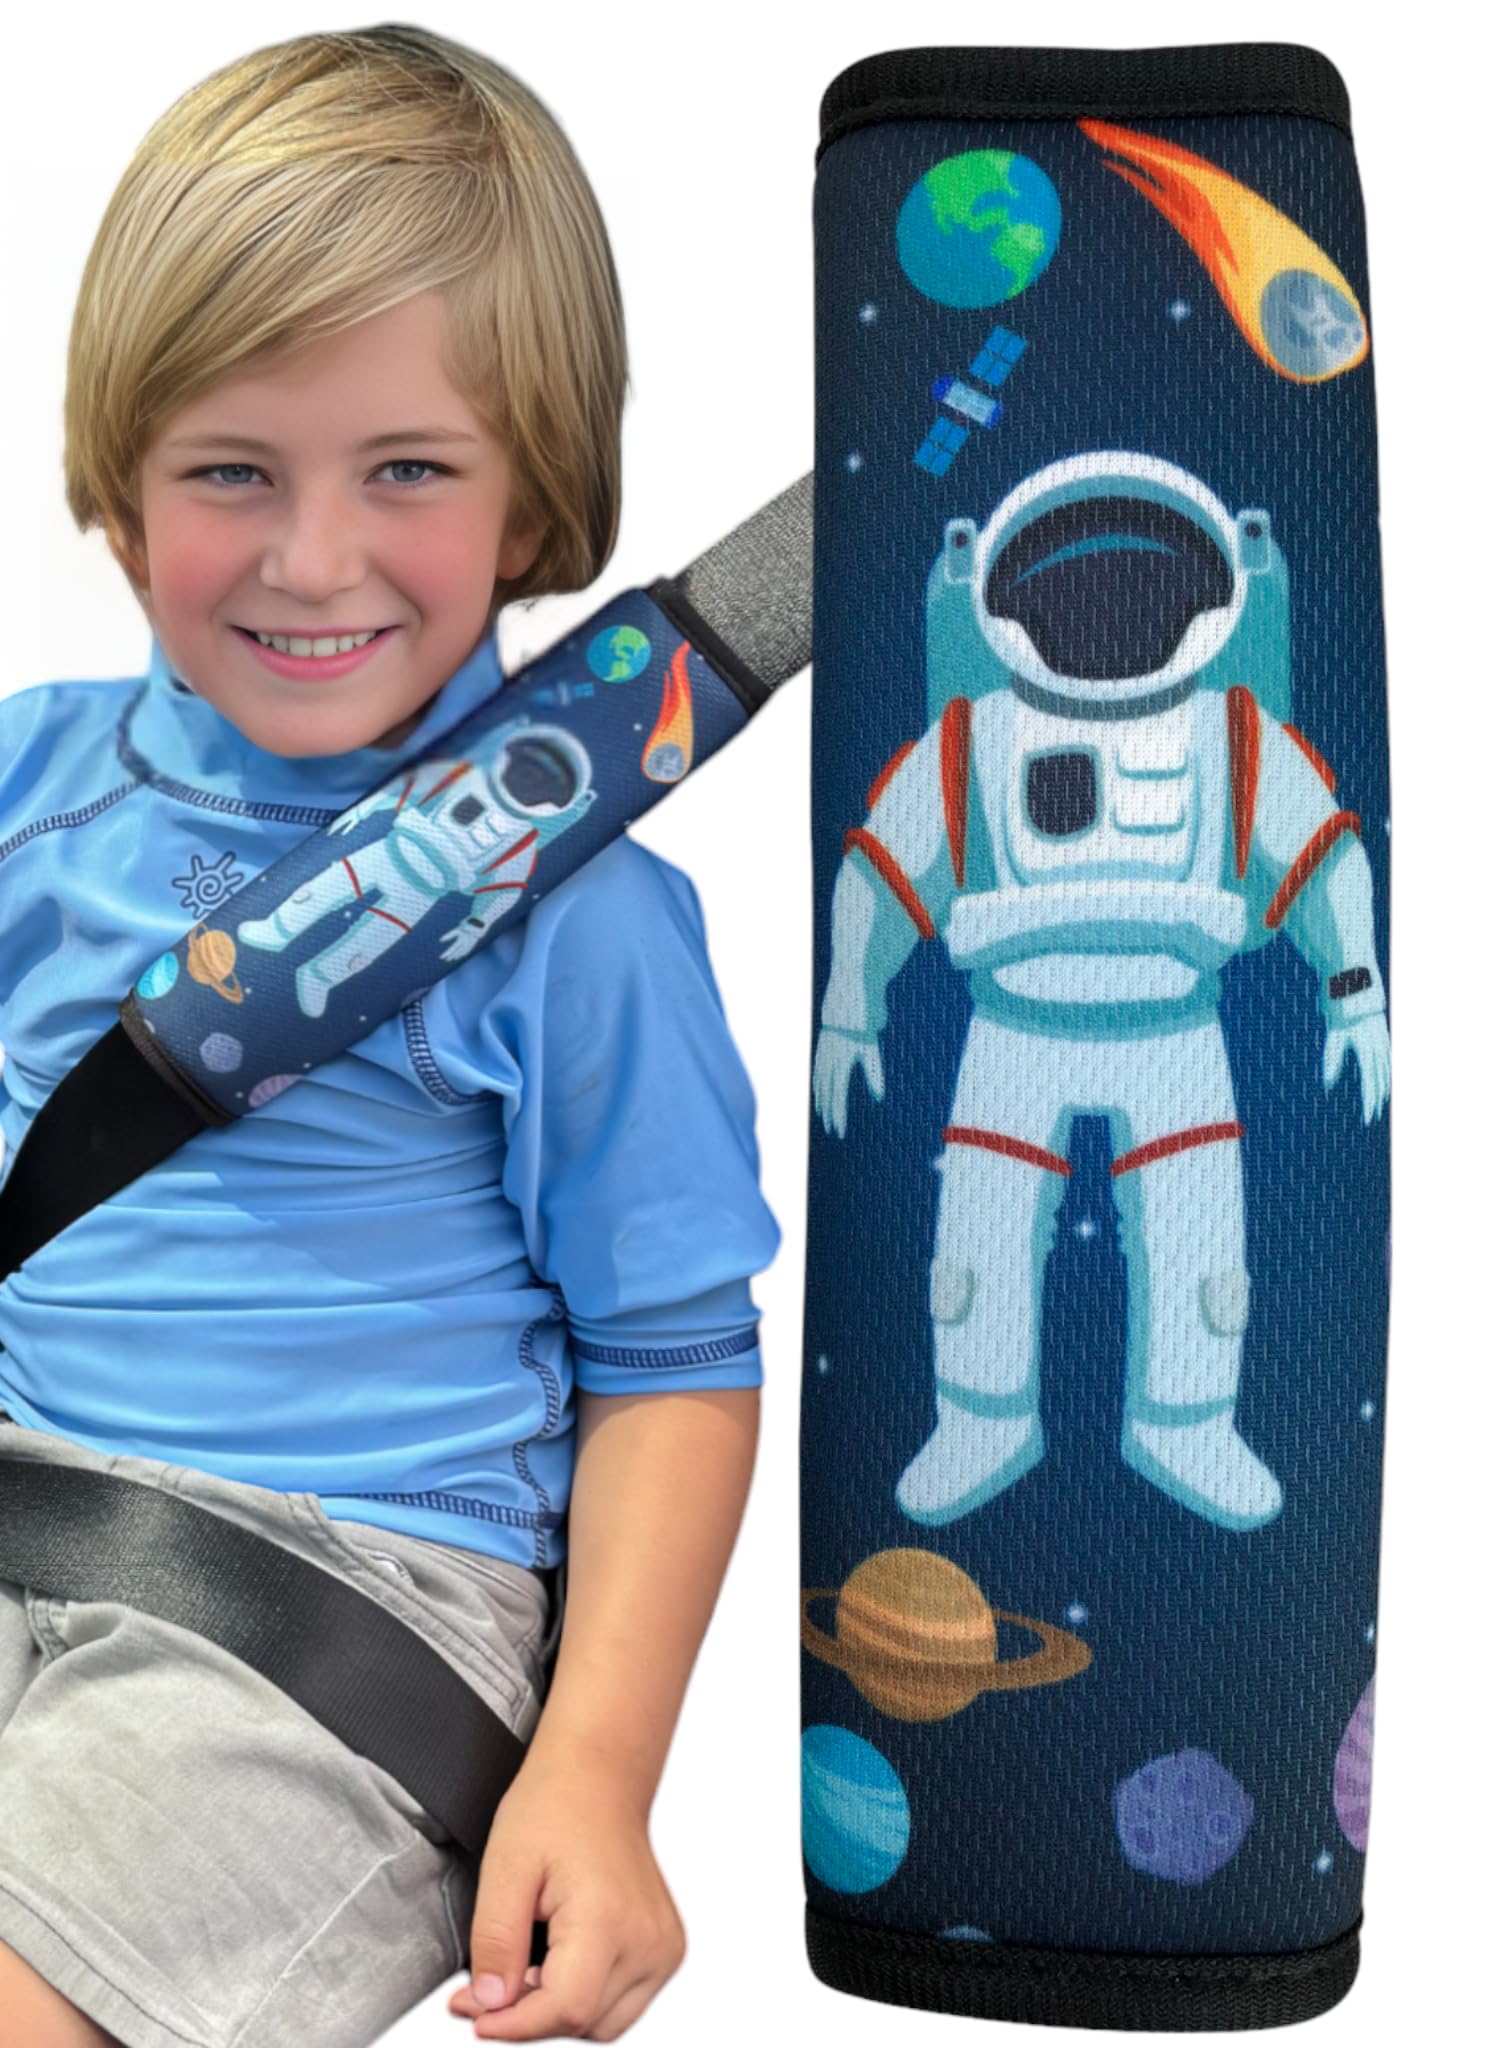 HECKBO 1x Kinder Auto Gurtpolster Gurtschutz mit Astronaut Weltraum Motiv - Mädchen Sicherheitsgurt Polster für Kinder und Babys von HECKBO